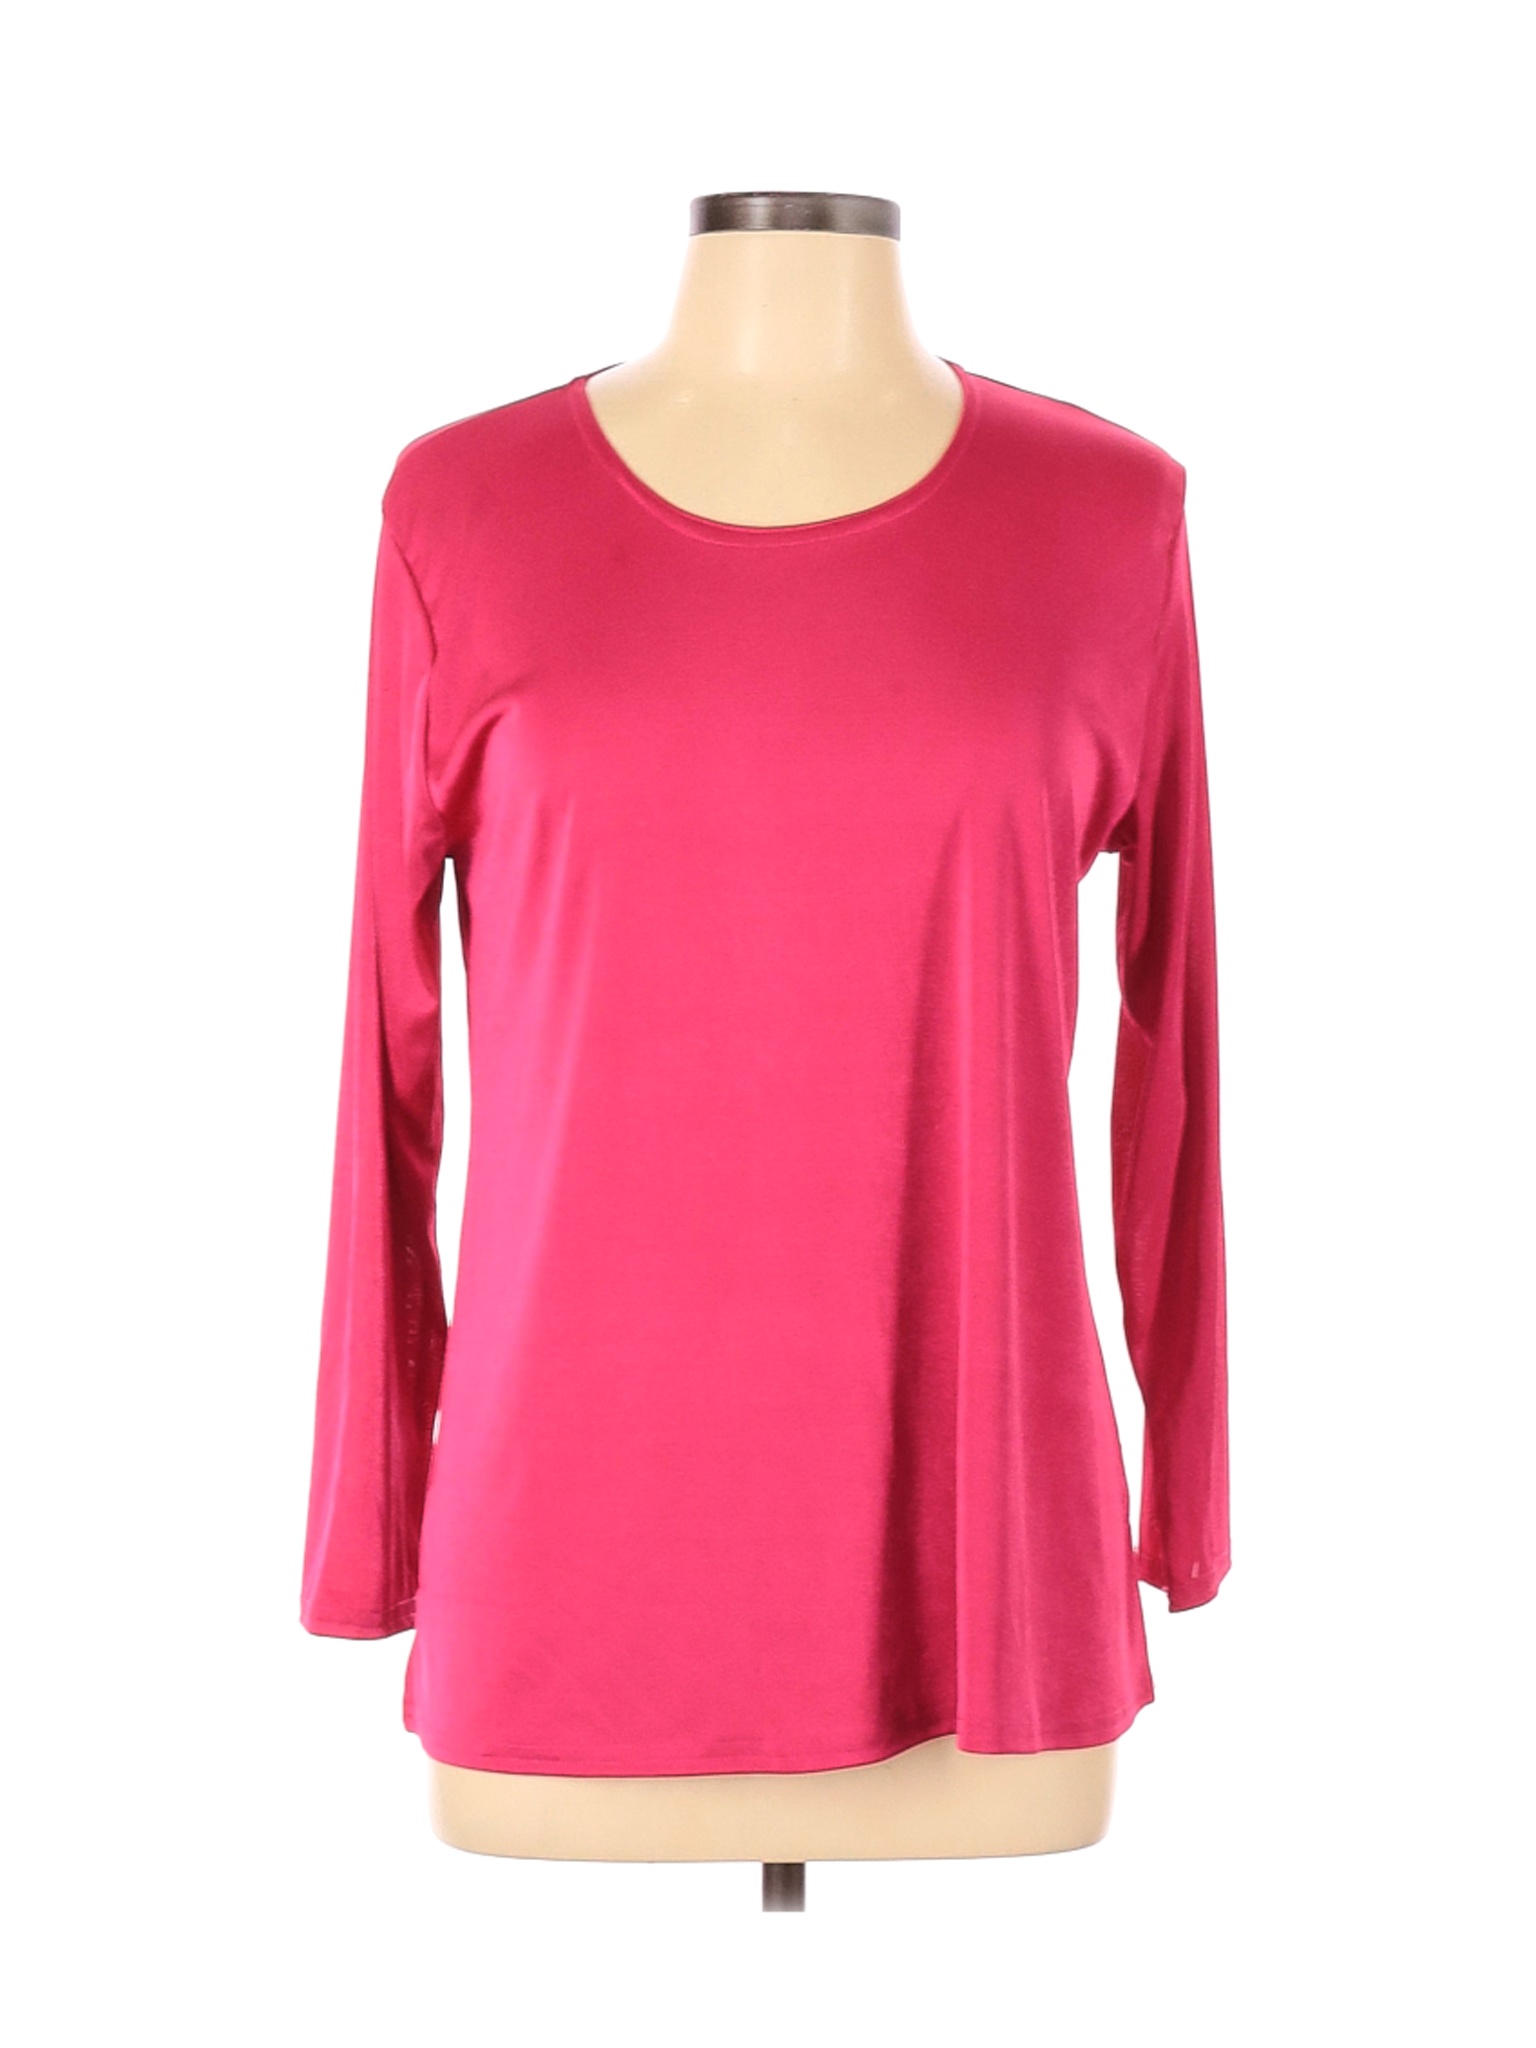 Jostar Women Pink Long Sleeve Top L | eBay